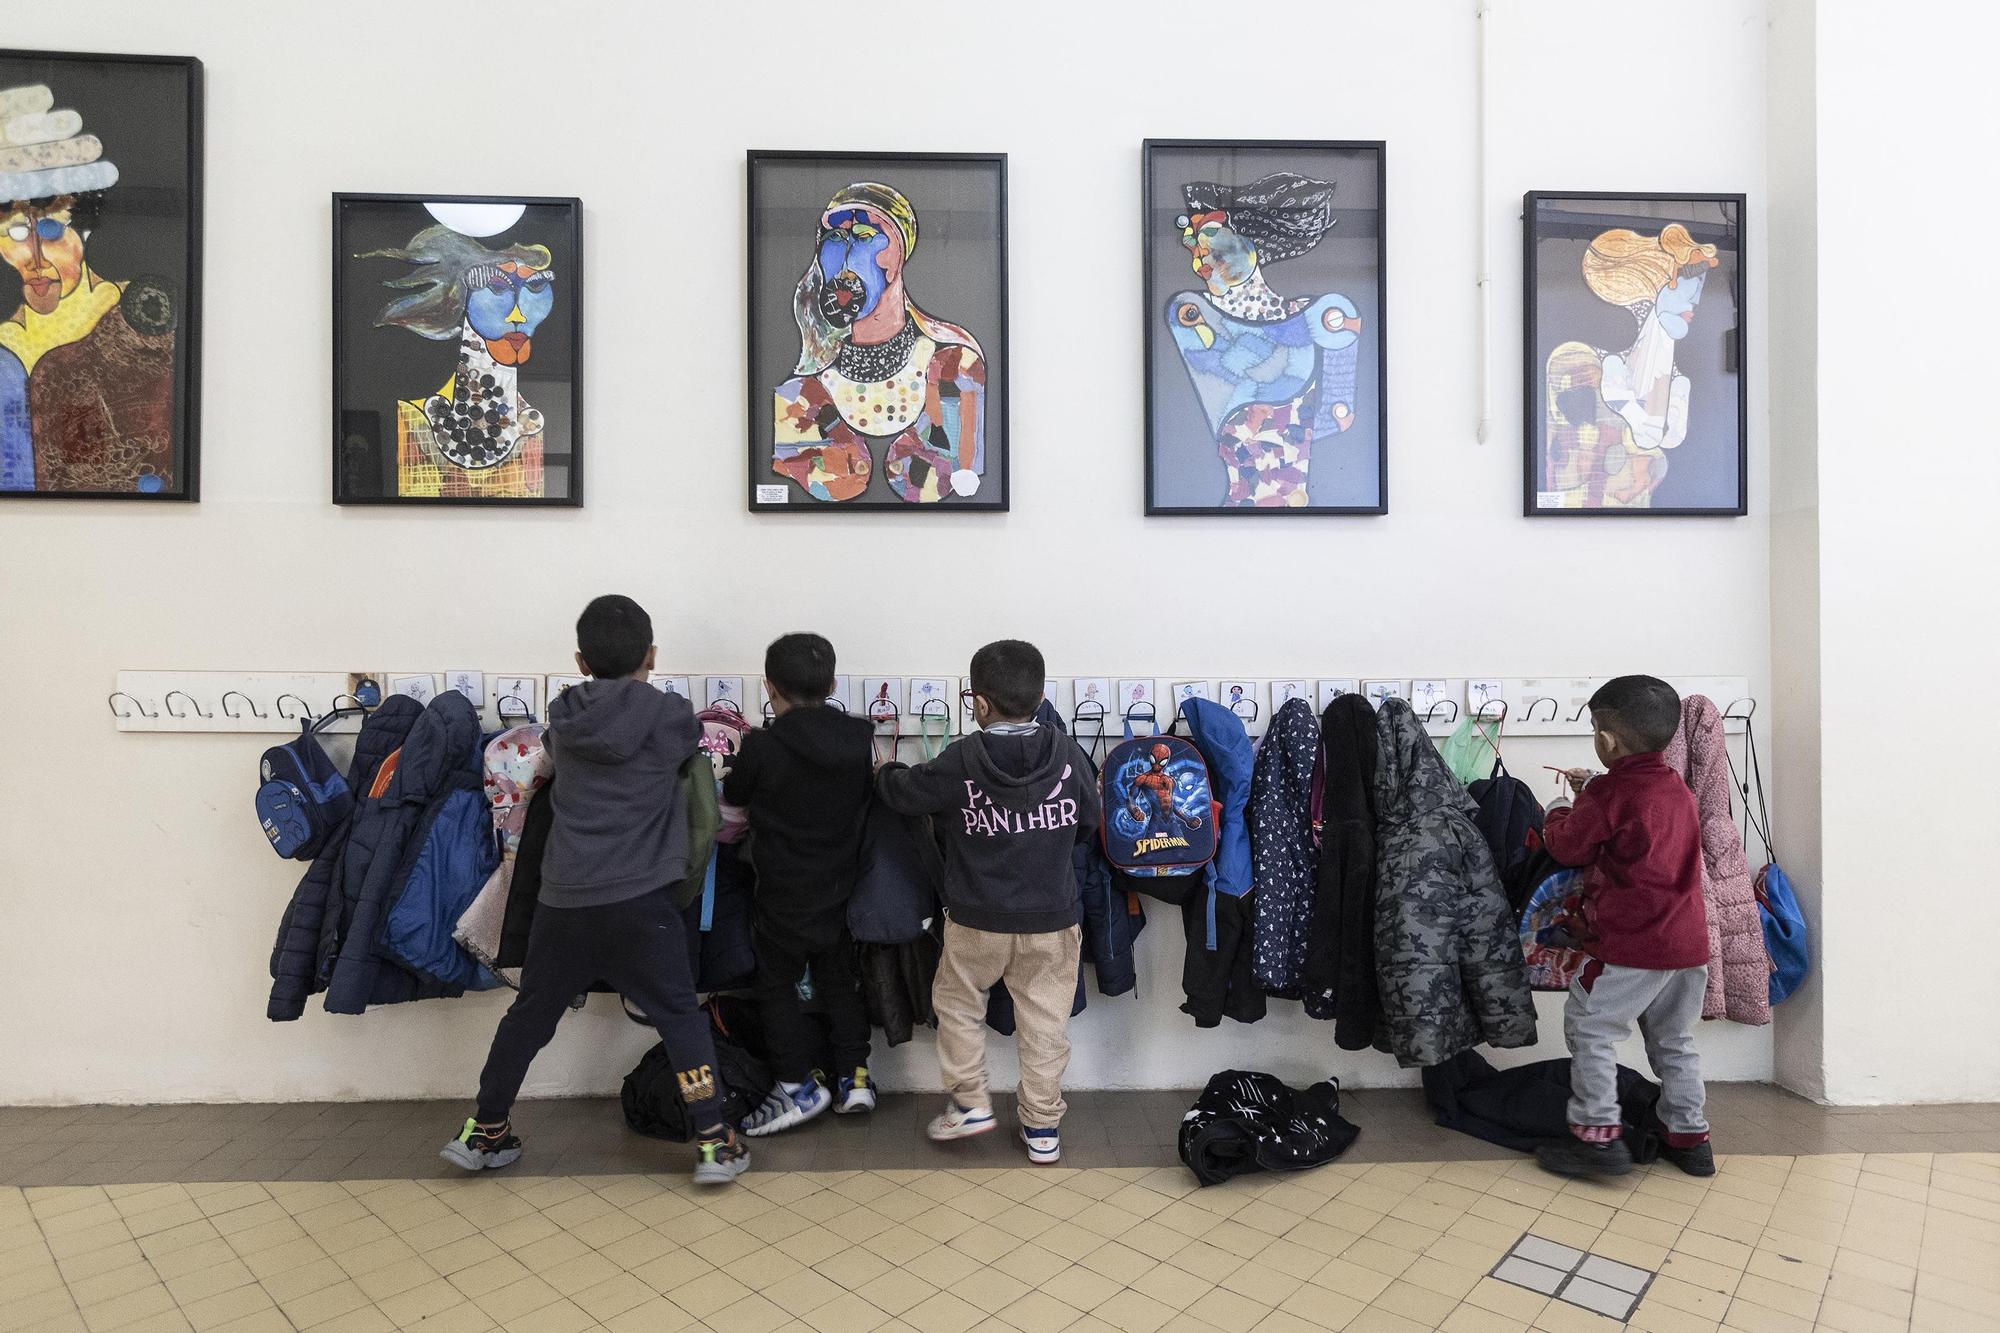 Niños en el pasillo de una escuela pública en Barcelona, este mes de marzo.